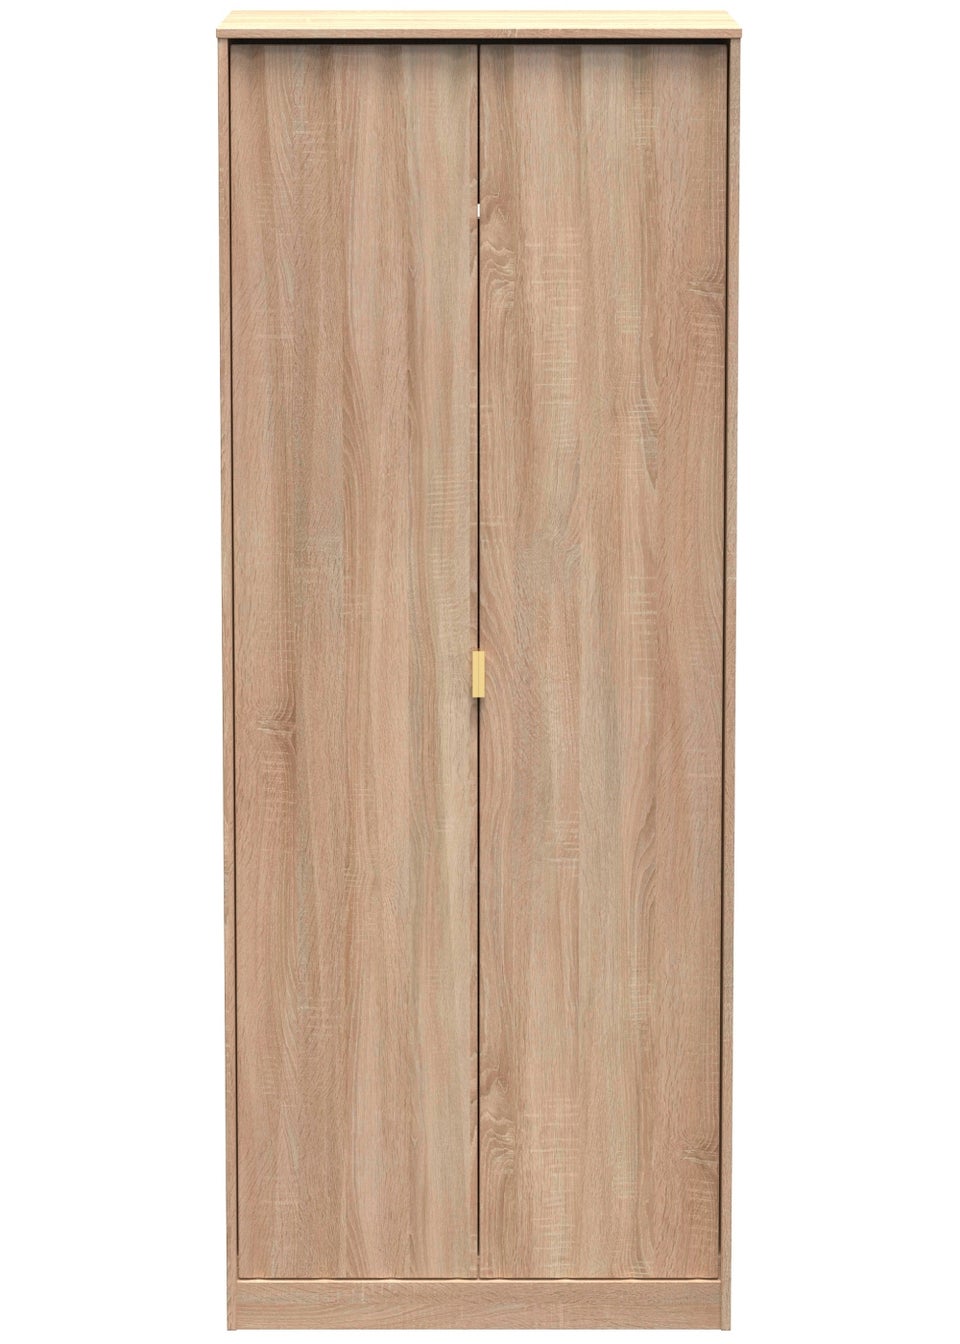 Swift Prism 2 Door Wardrobe (197cm x 74cm x 53cm)